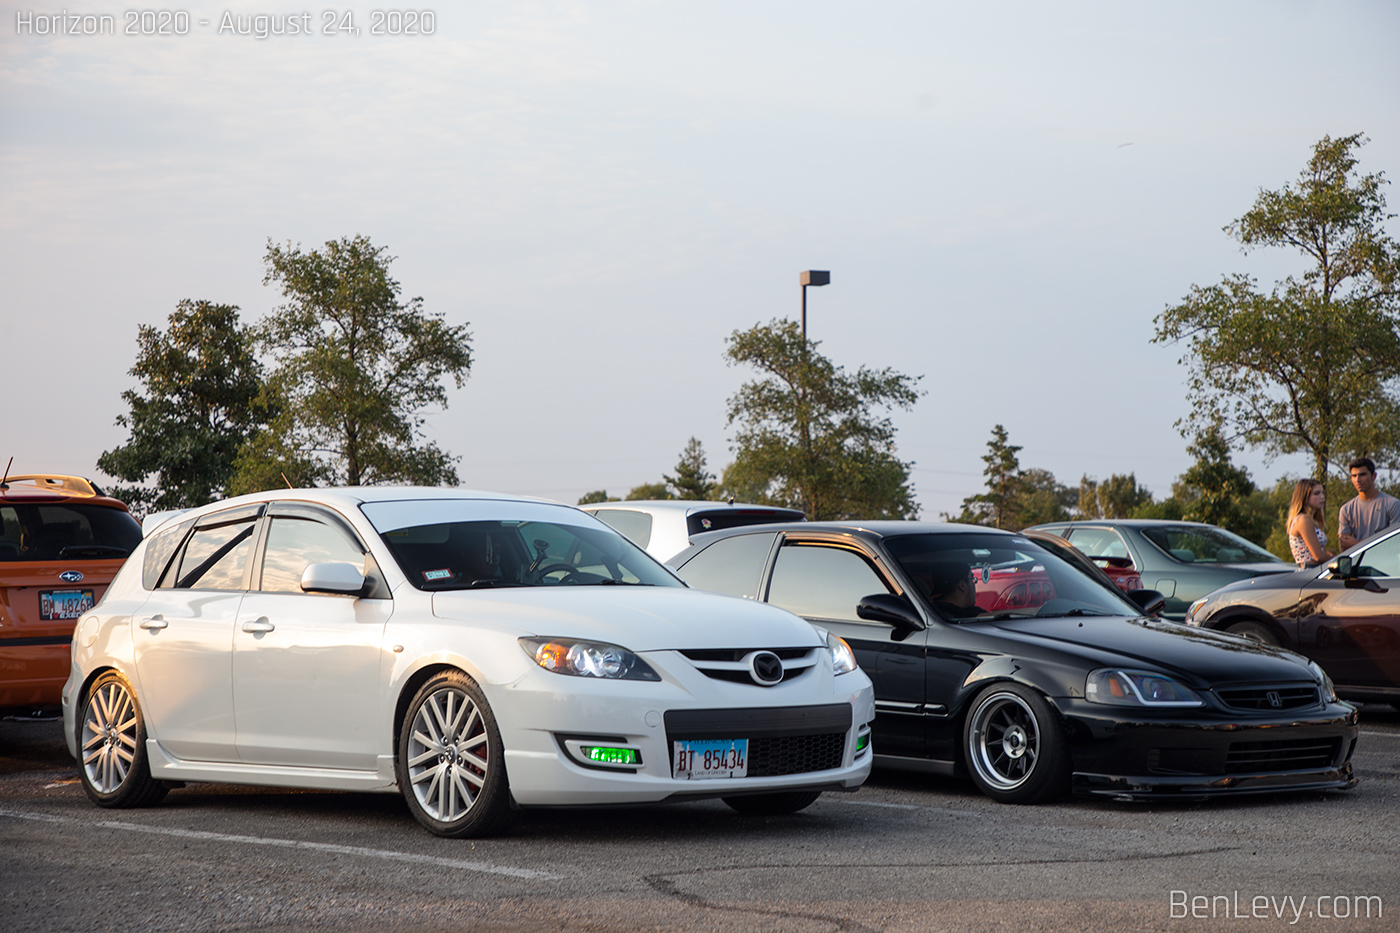 MazdaSpeed3 and Honda Civic